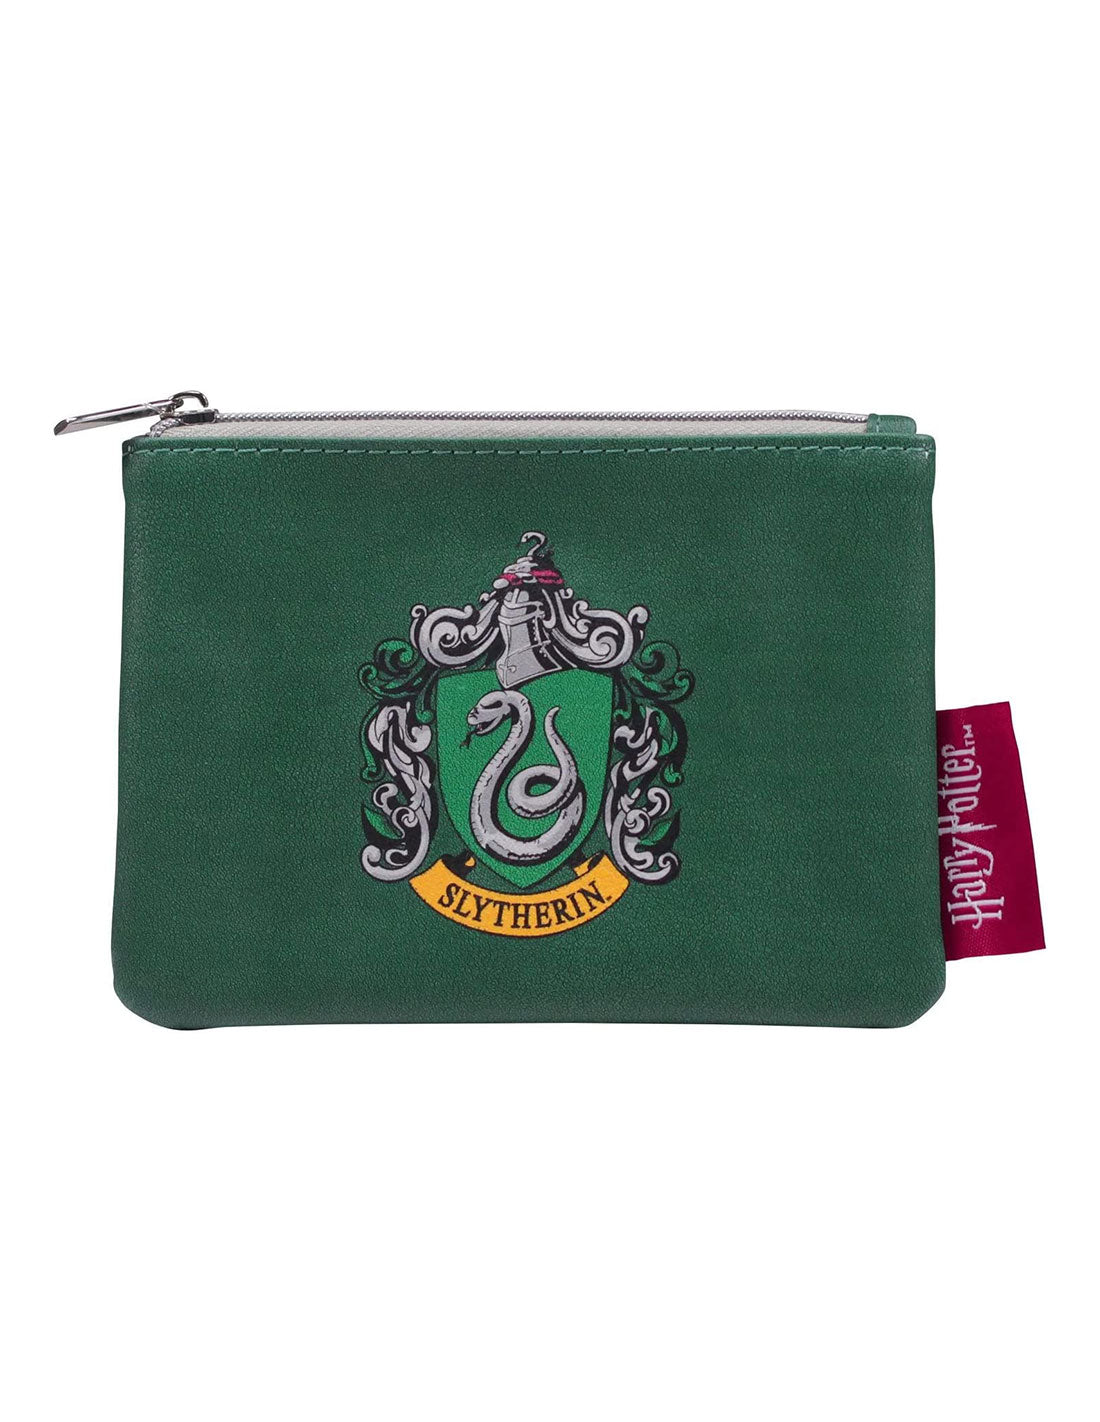 Harry Potter purse - Slytherin